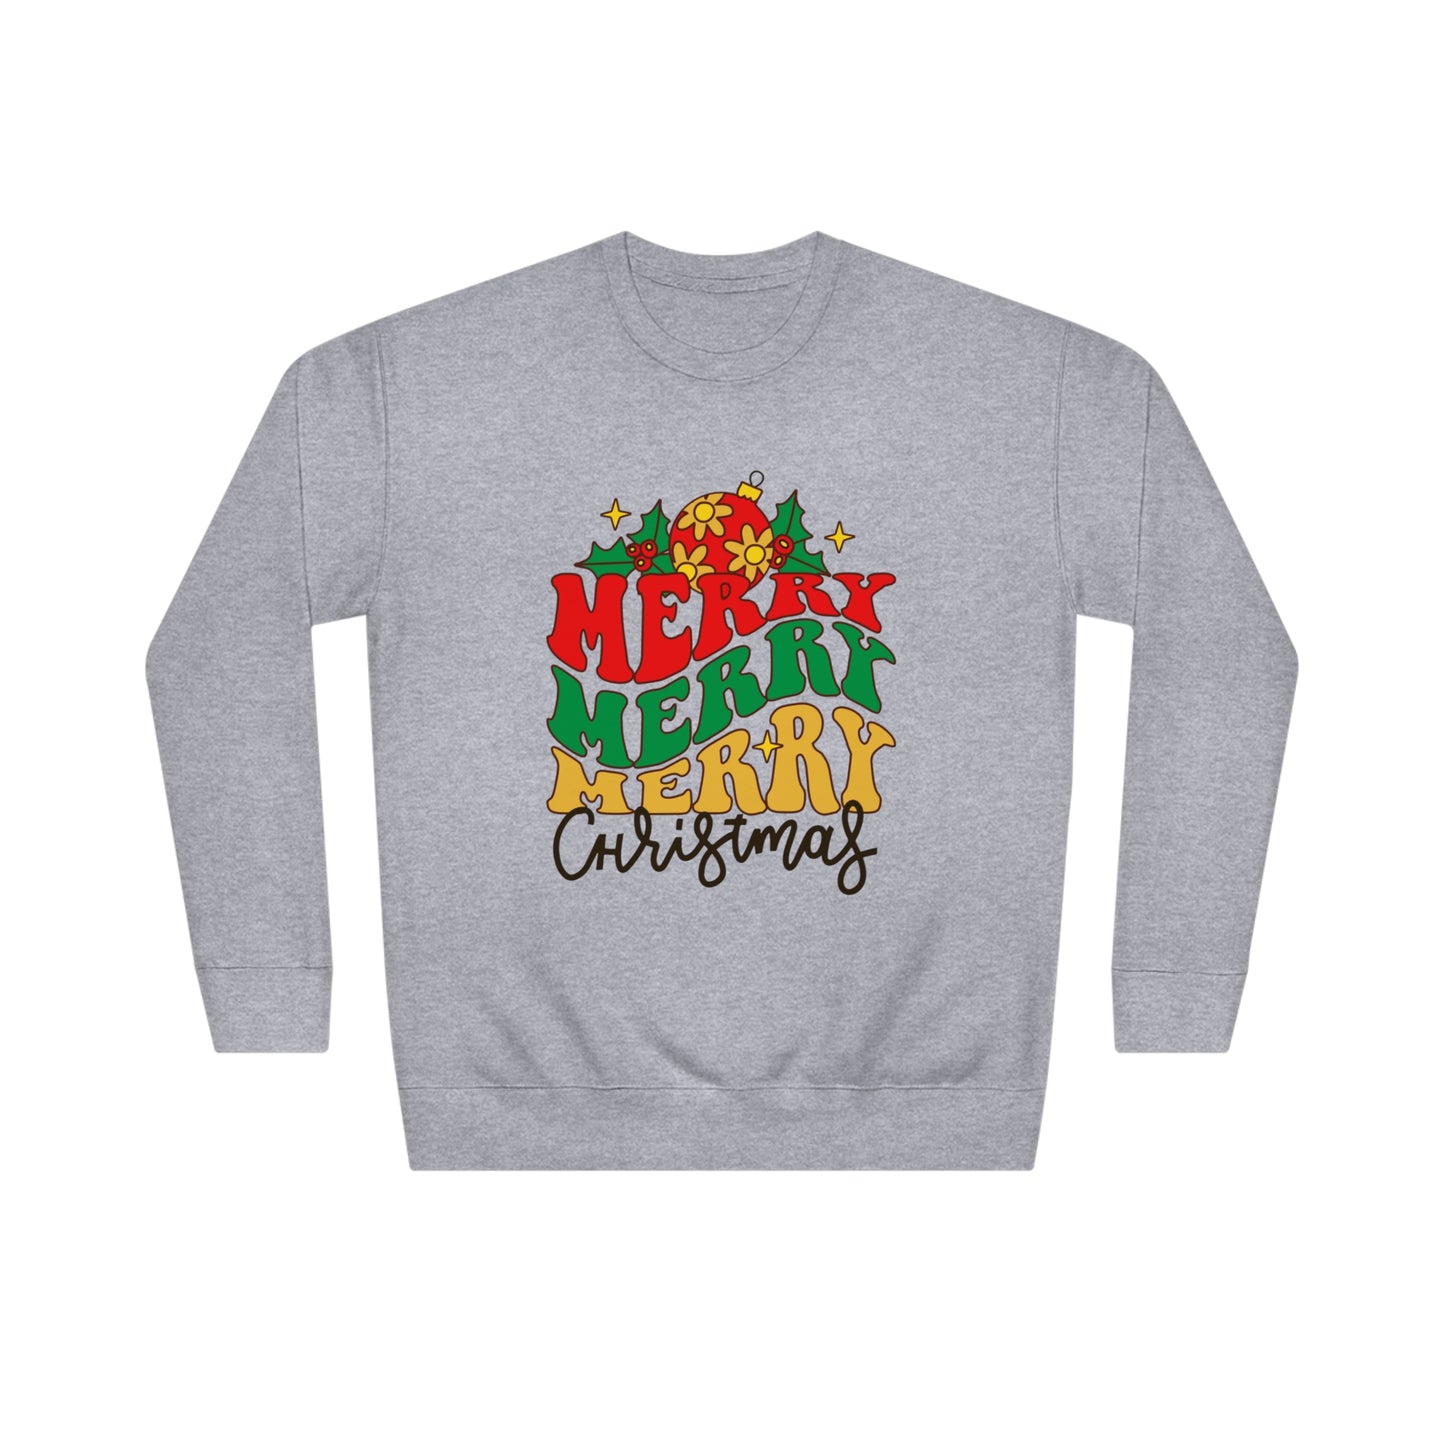 Unisex Merry Christmas Crew Sweatshirt